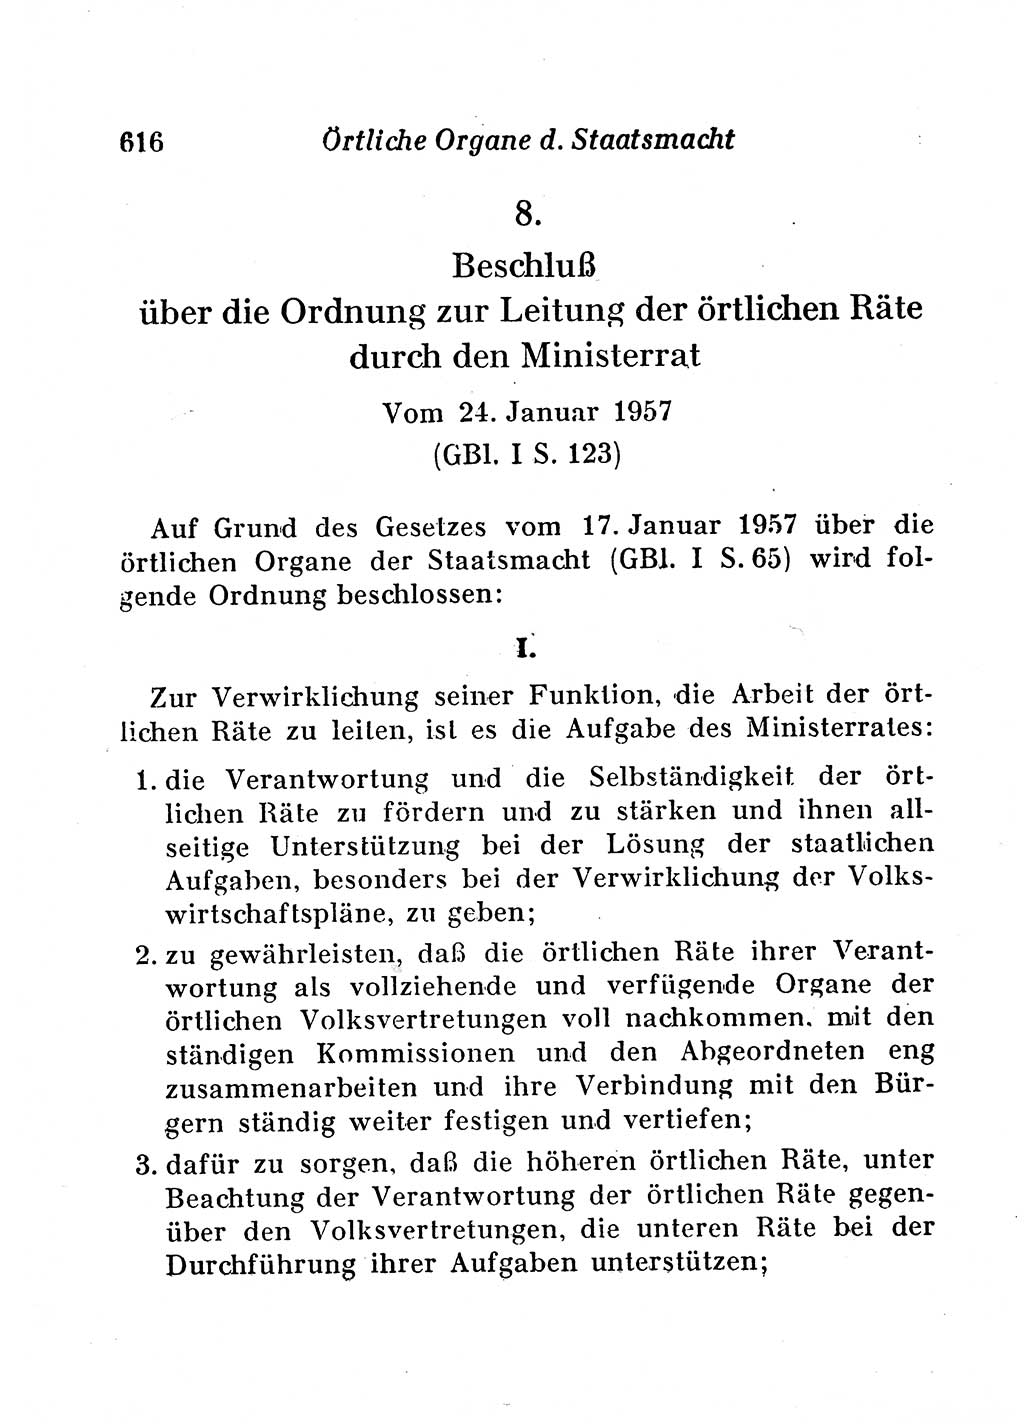 Staats- und verwaltungsrechtliche Gesetze der Deutschen Demokratischen Republik (DDR) 1958, Seite 616 (StVerwR Ges. DDR 1958, S. 616)